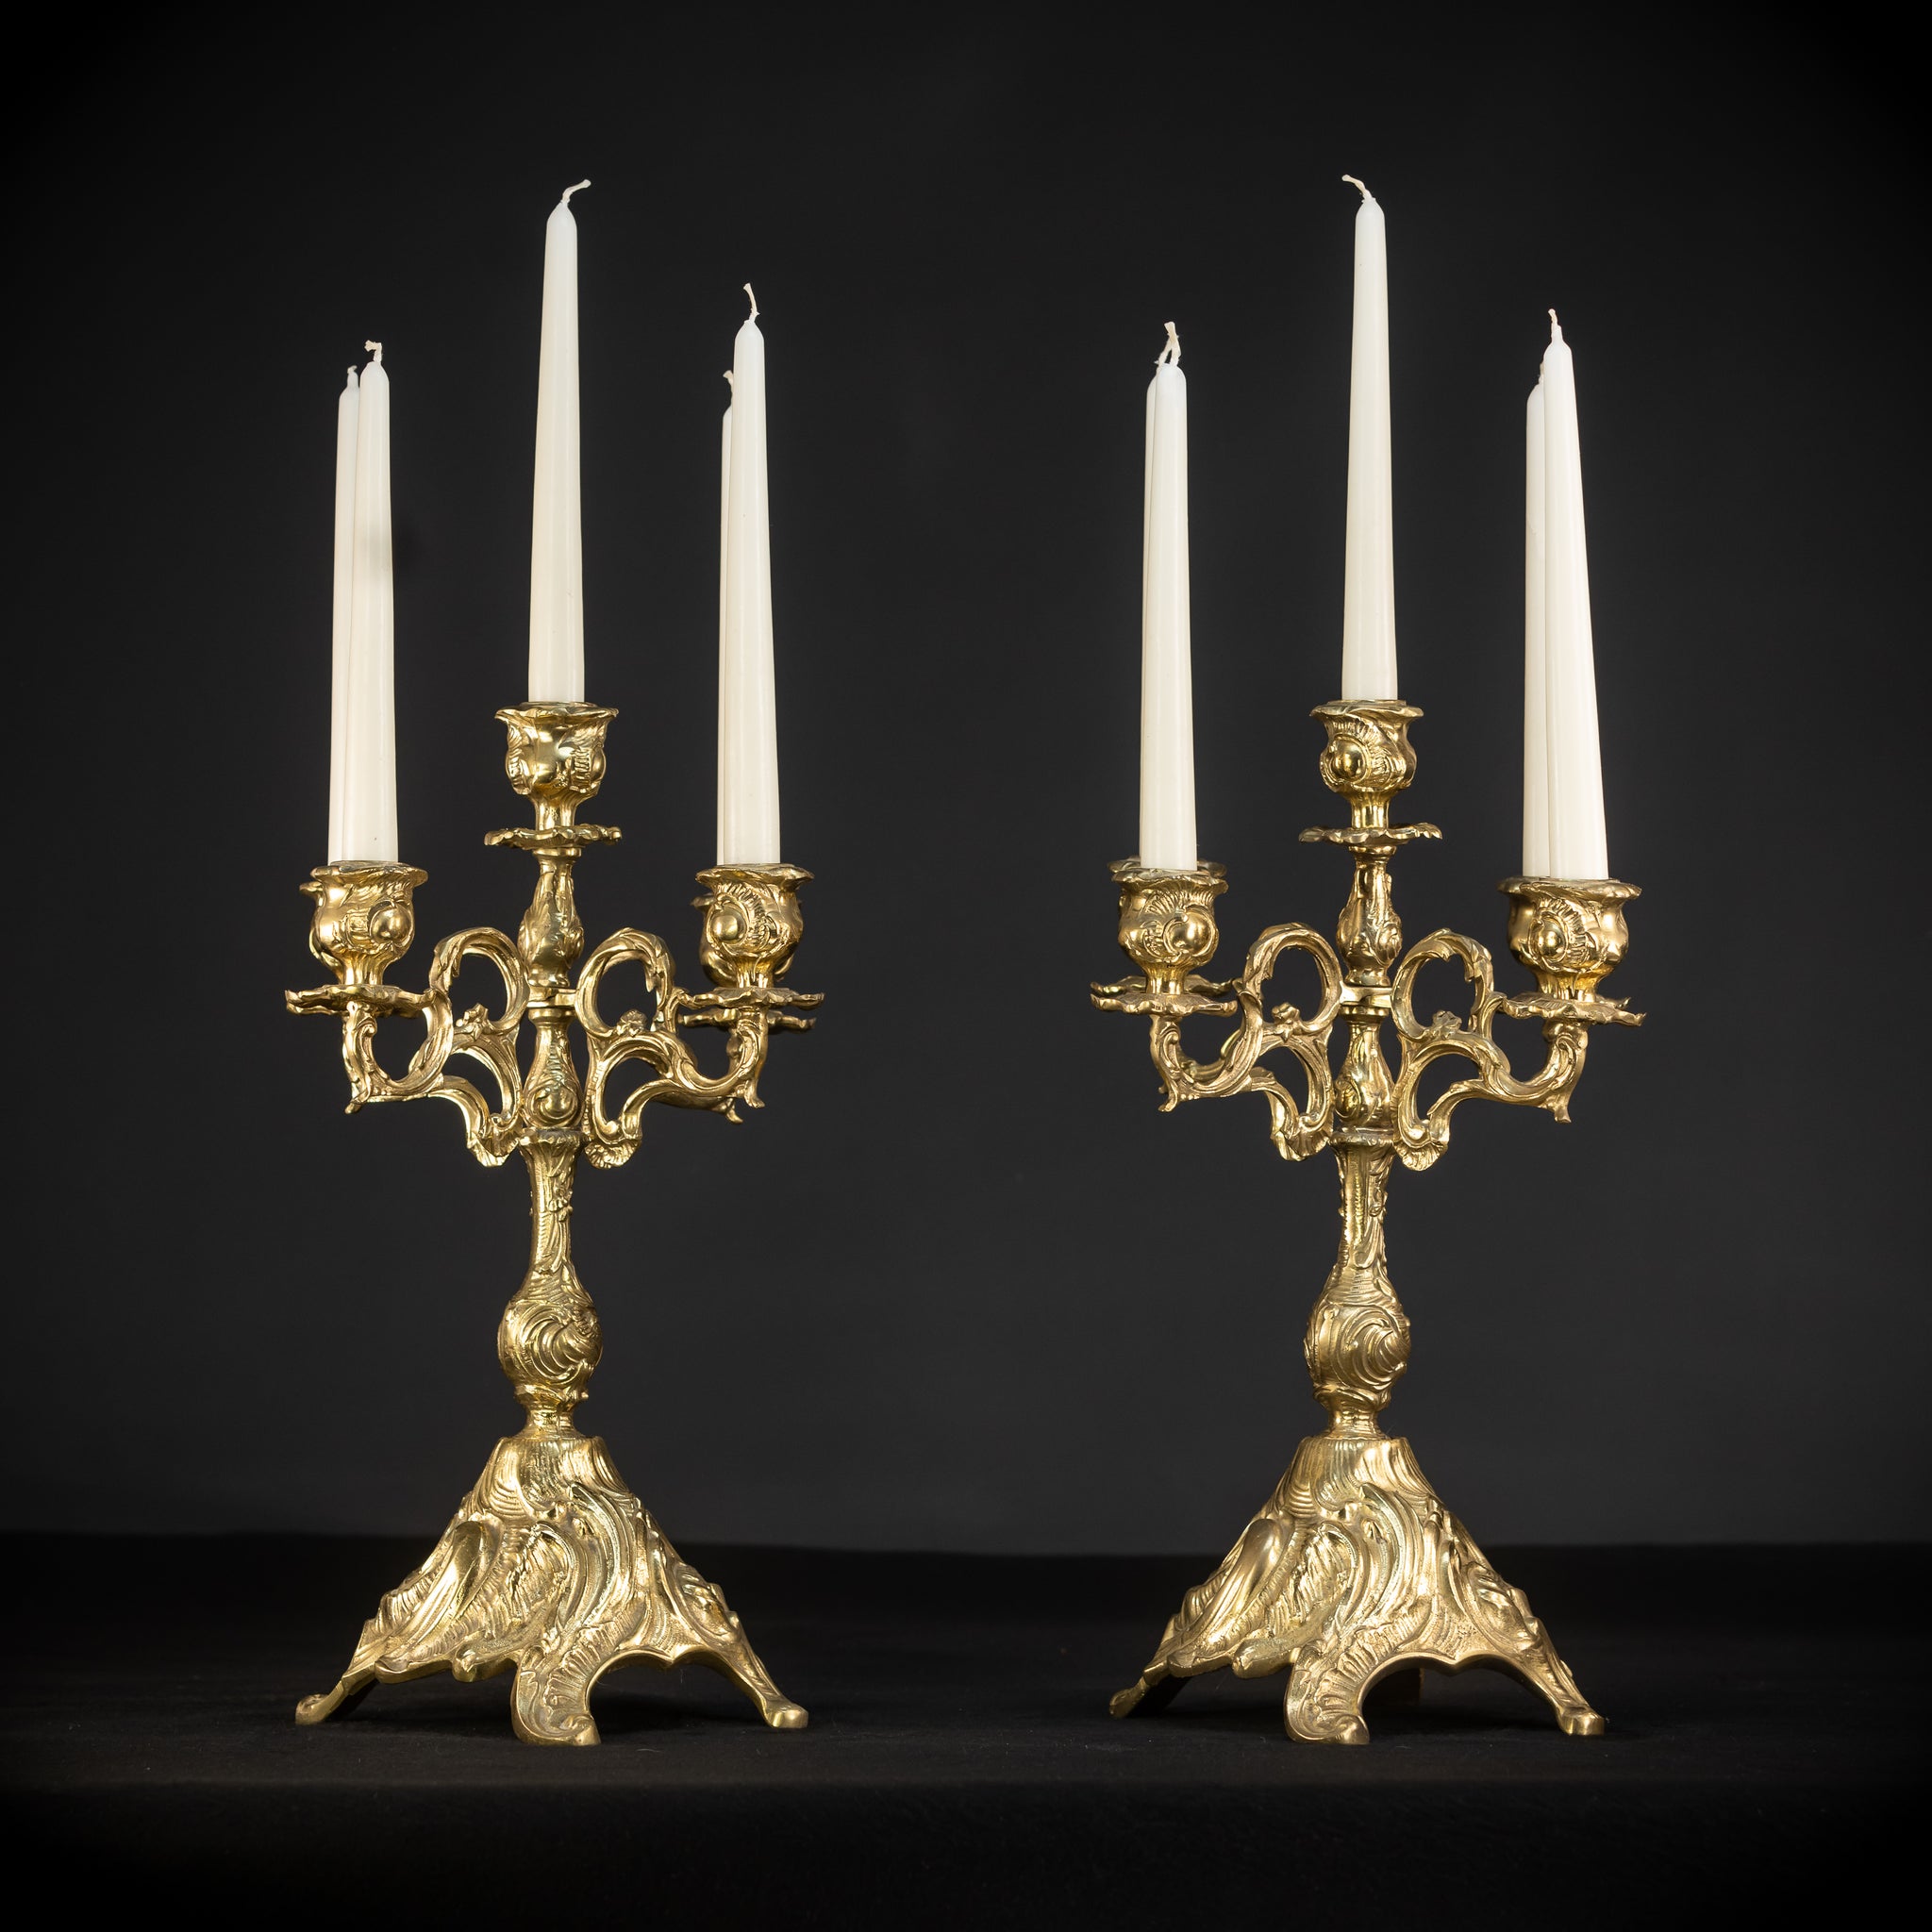 Pair of Bronze Candelabras - 5 Lights | 1900s Vintage | 16.1" / 41 cm